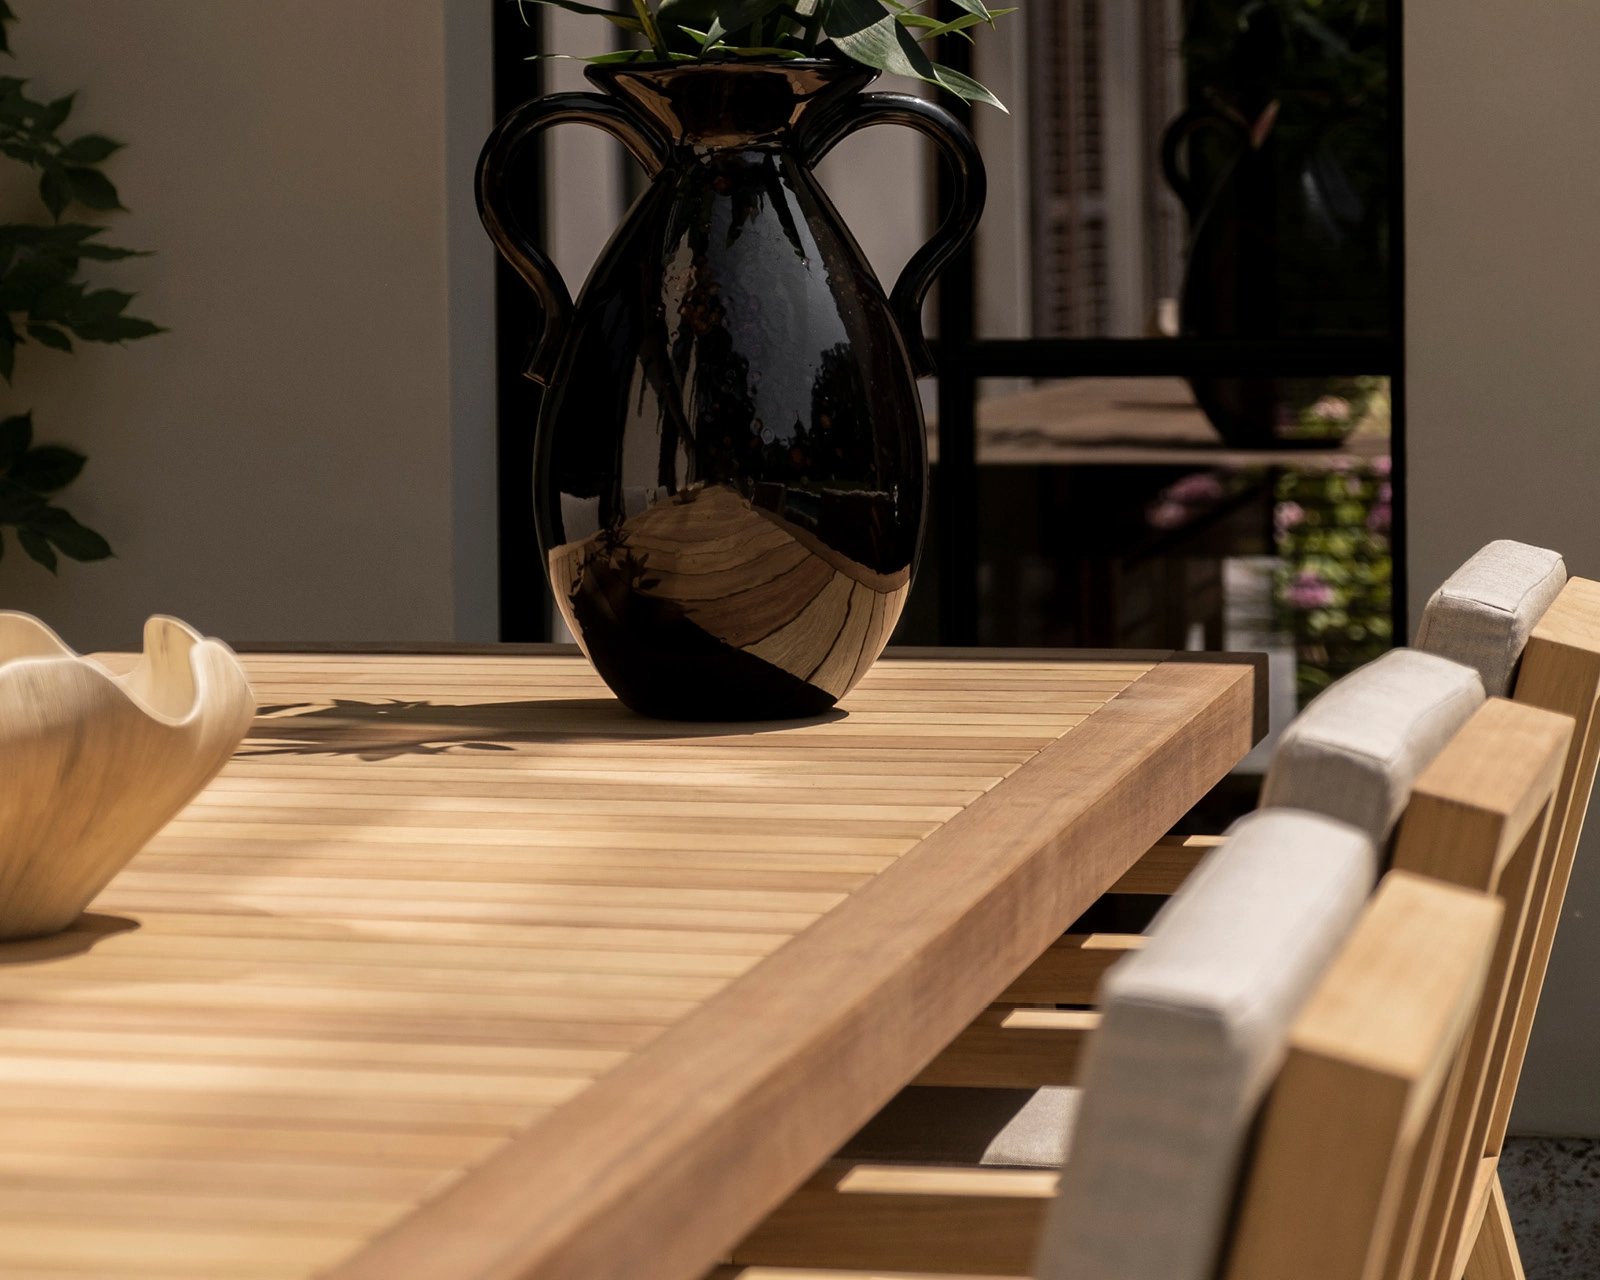 De iroko buitenmeubel collectie van Table du Sud bestaat uit een serie tuintafels en tuinstoelen die gemaakt zijn van iroko hout en op maat worden gemaakt in eigen werkplaats in Nederland.